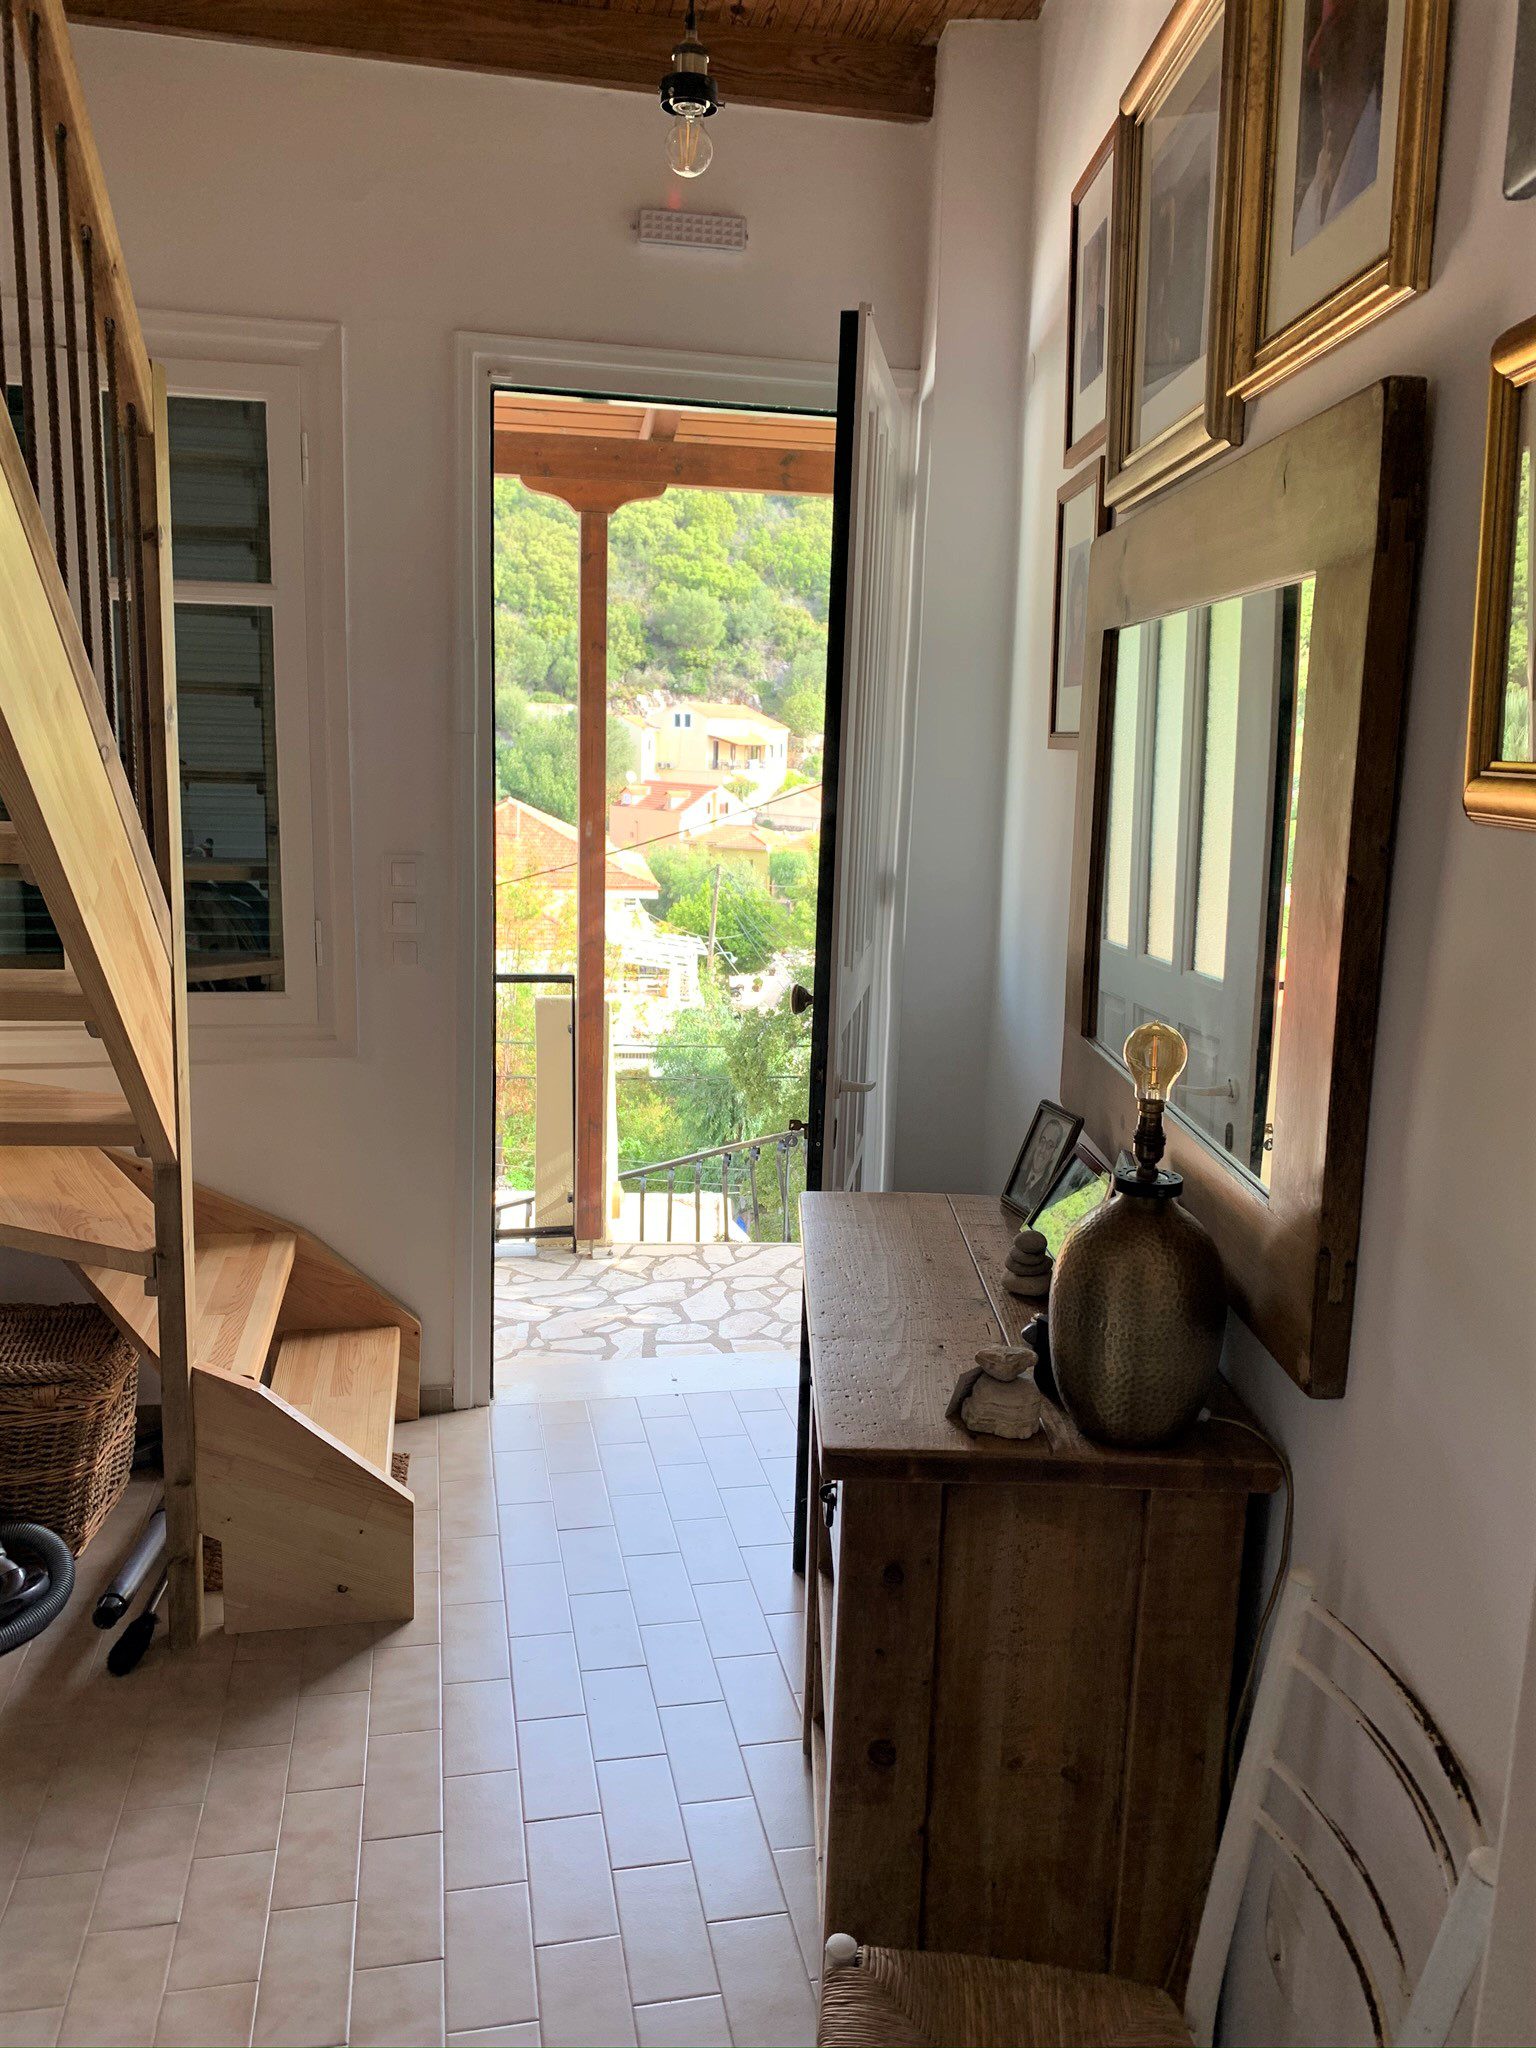 Εσωτερικό του σπιτιού εσωτερικά σύνθετα διαμερίσματα προς πώληση στην Ιθαca Ελλάδα, Κιόνι